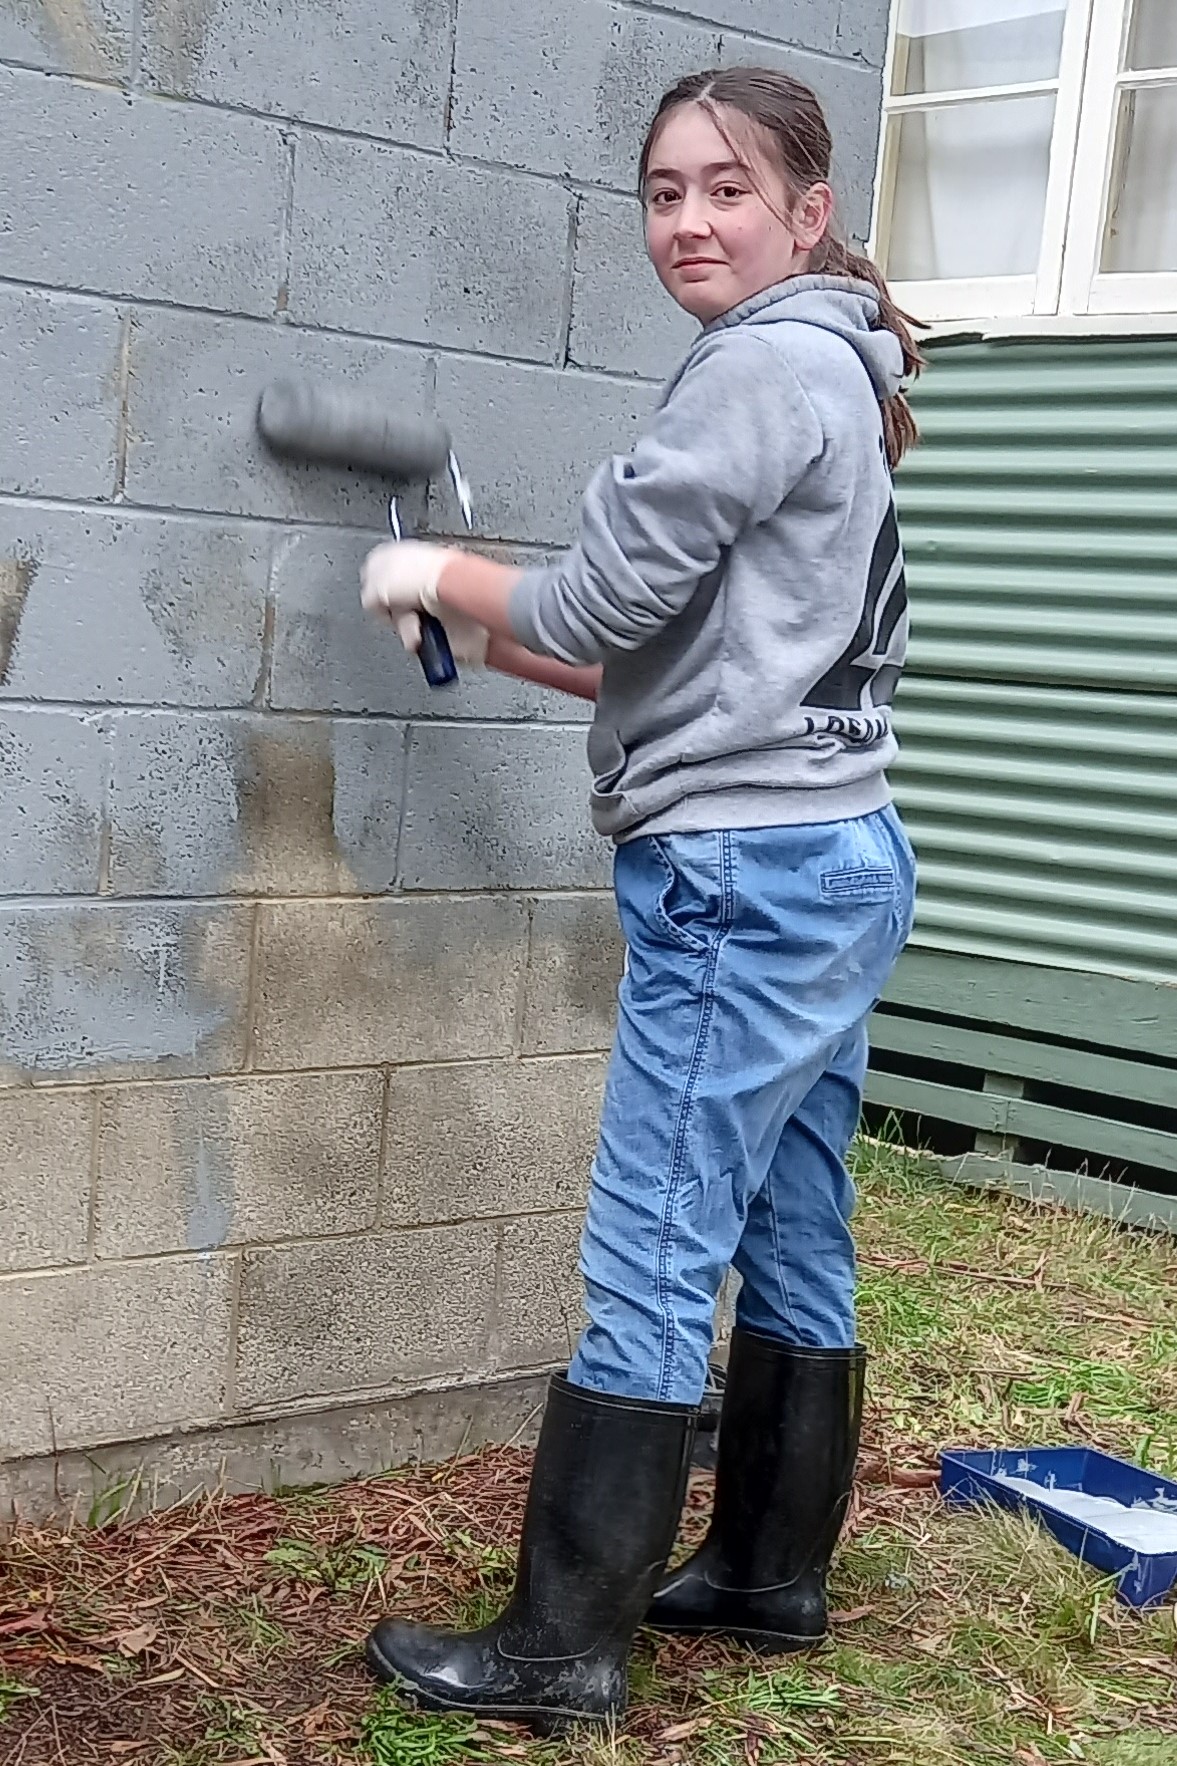 11th Ballarat Guides Clean Graffiti (2)